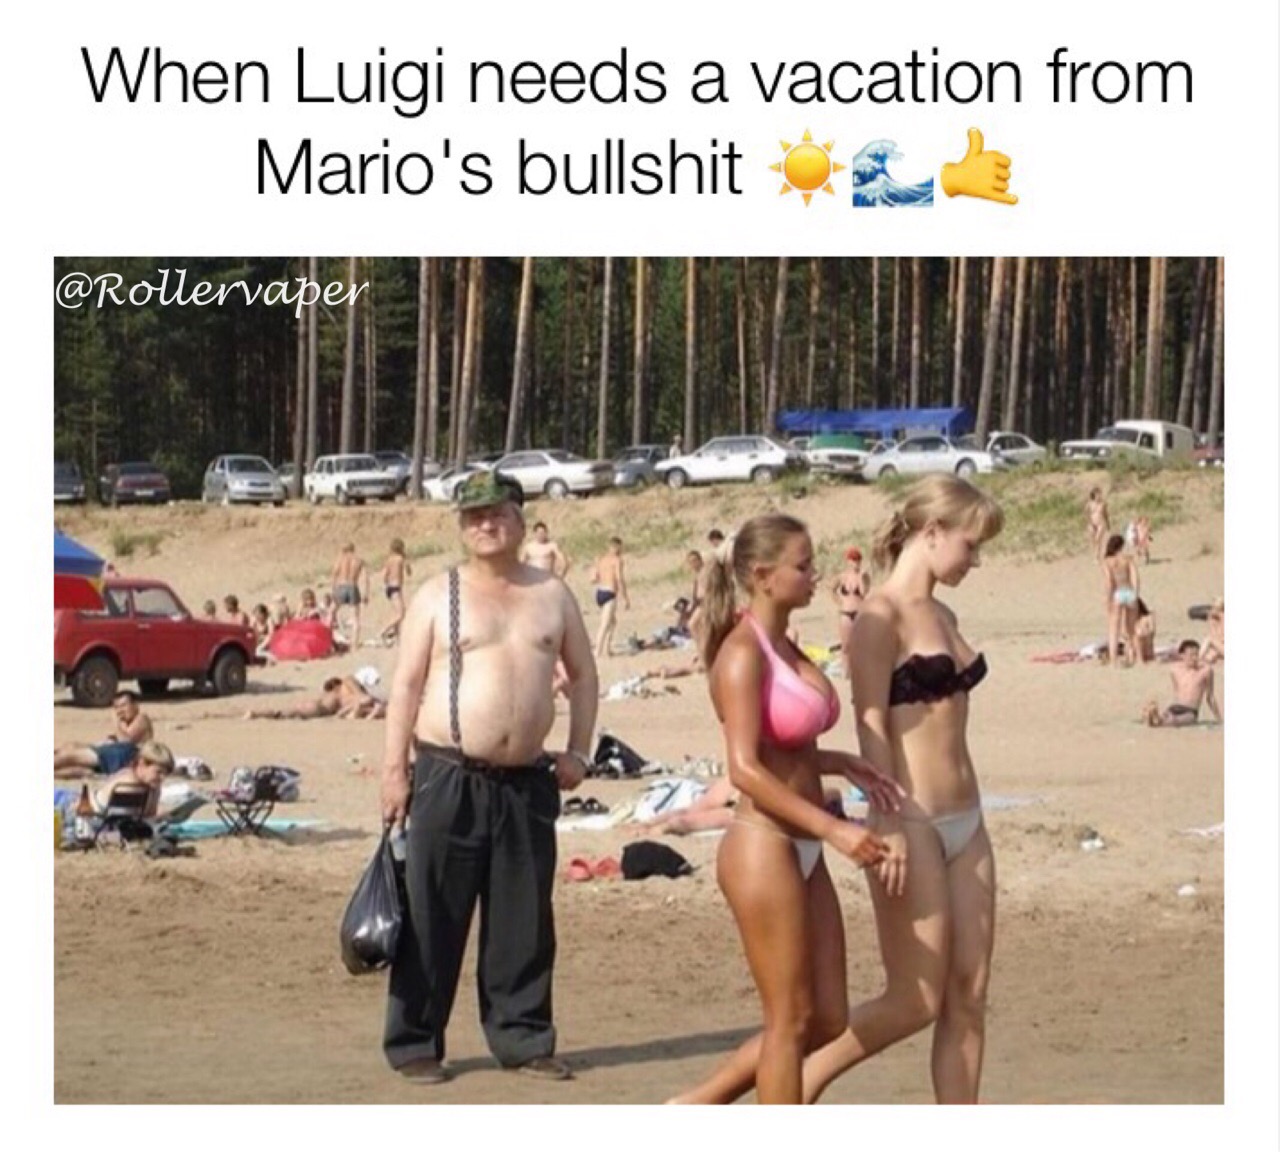 beach - When Luigi needs a vacation from Mario's bullshit